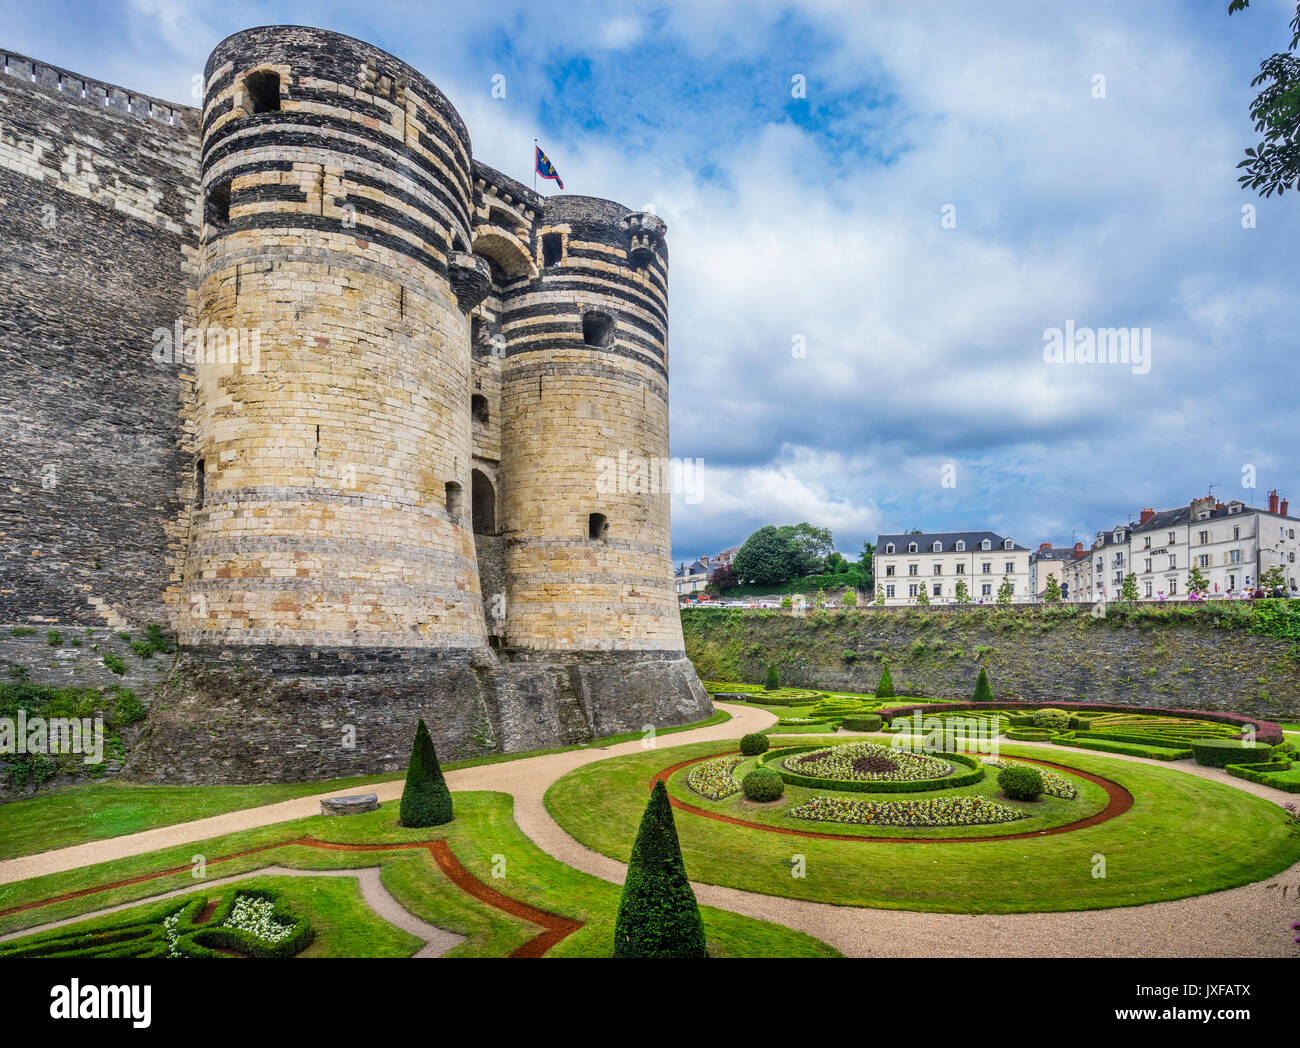 Francia Pays de la Loire, Angers, Château d'Angers, ornata giardini sotto la porta del sud i merli del castello medievale Foto Stock